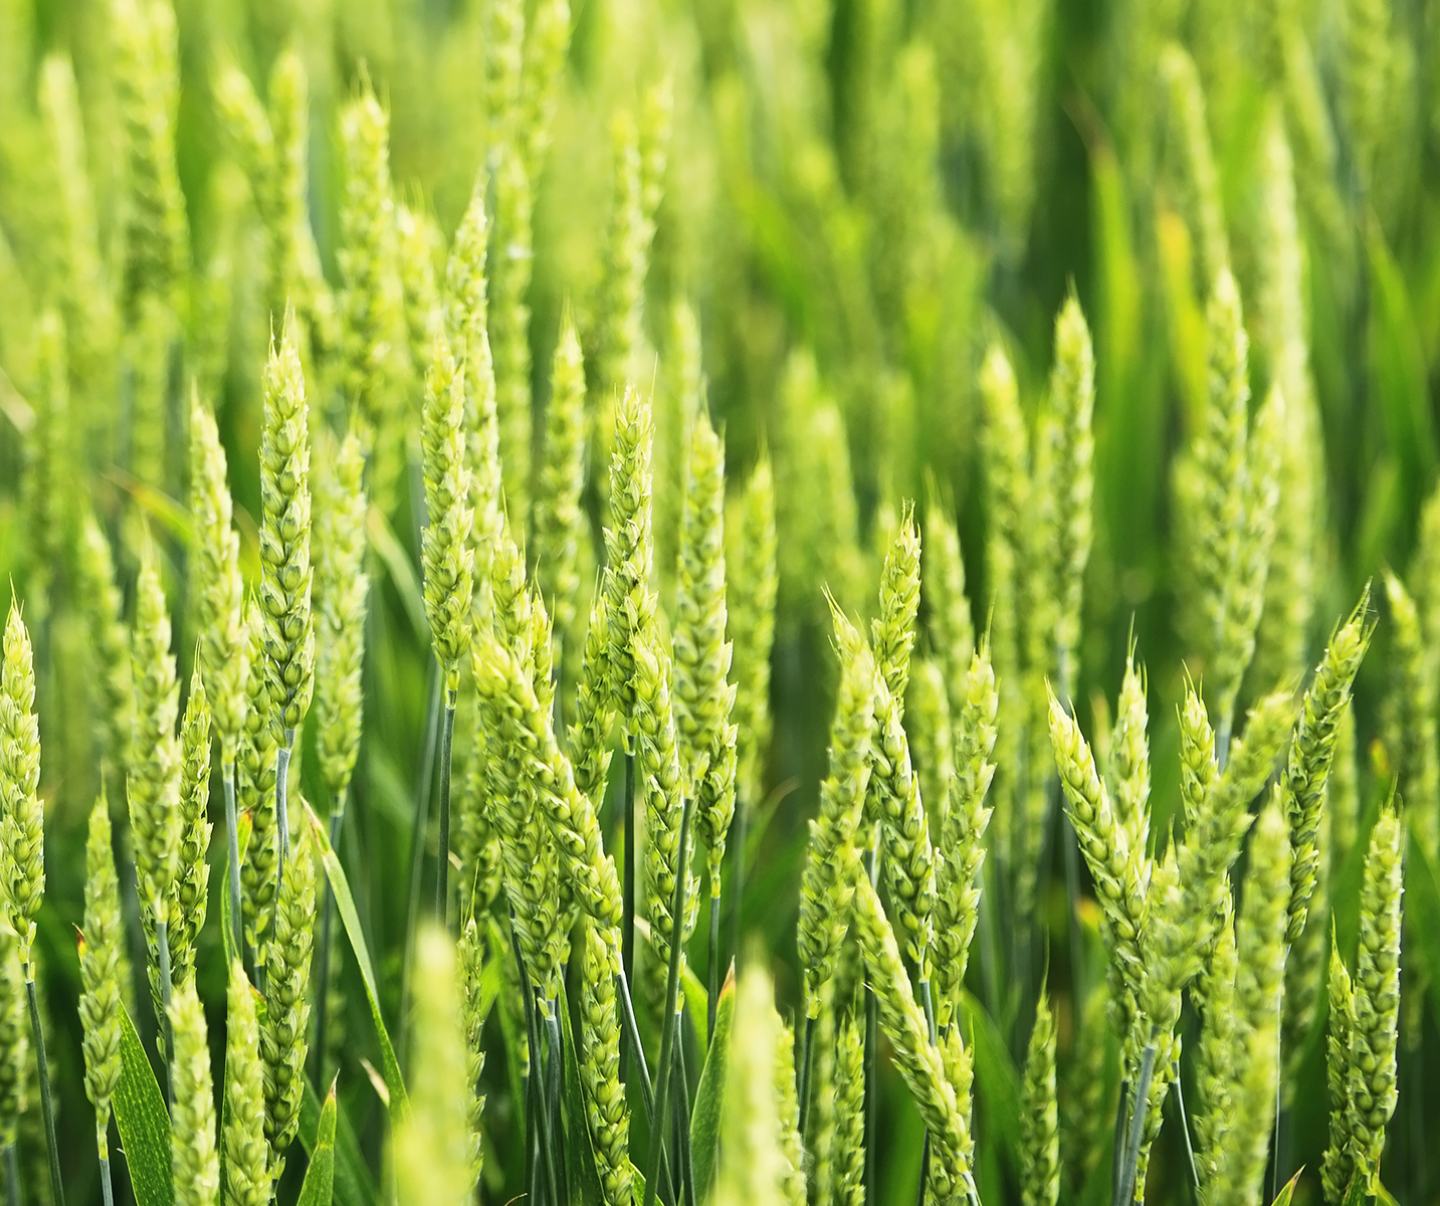 Green wheat in field 